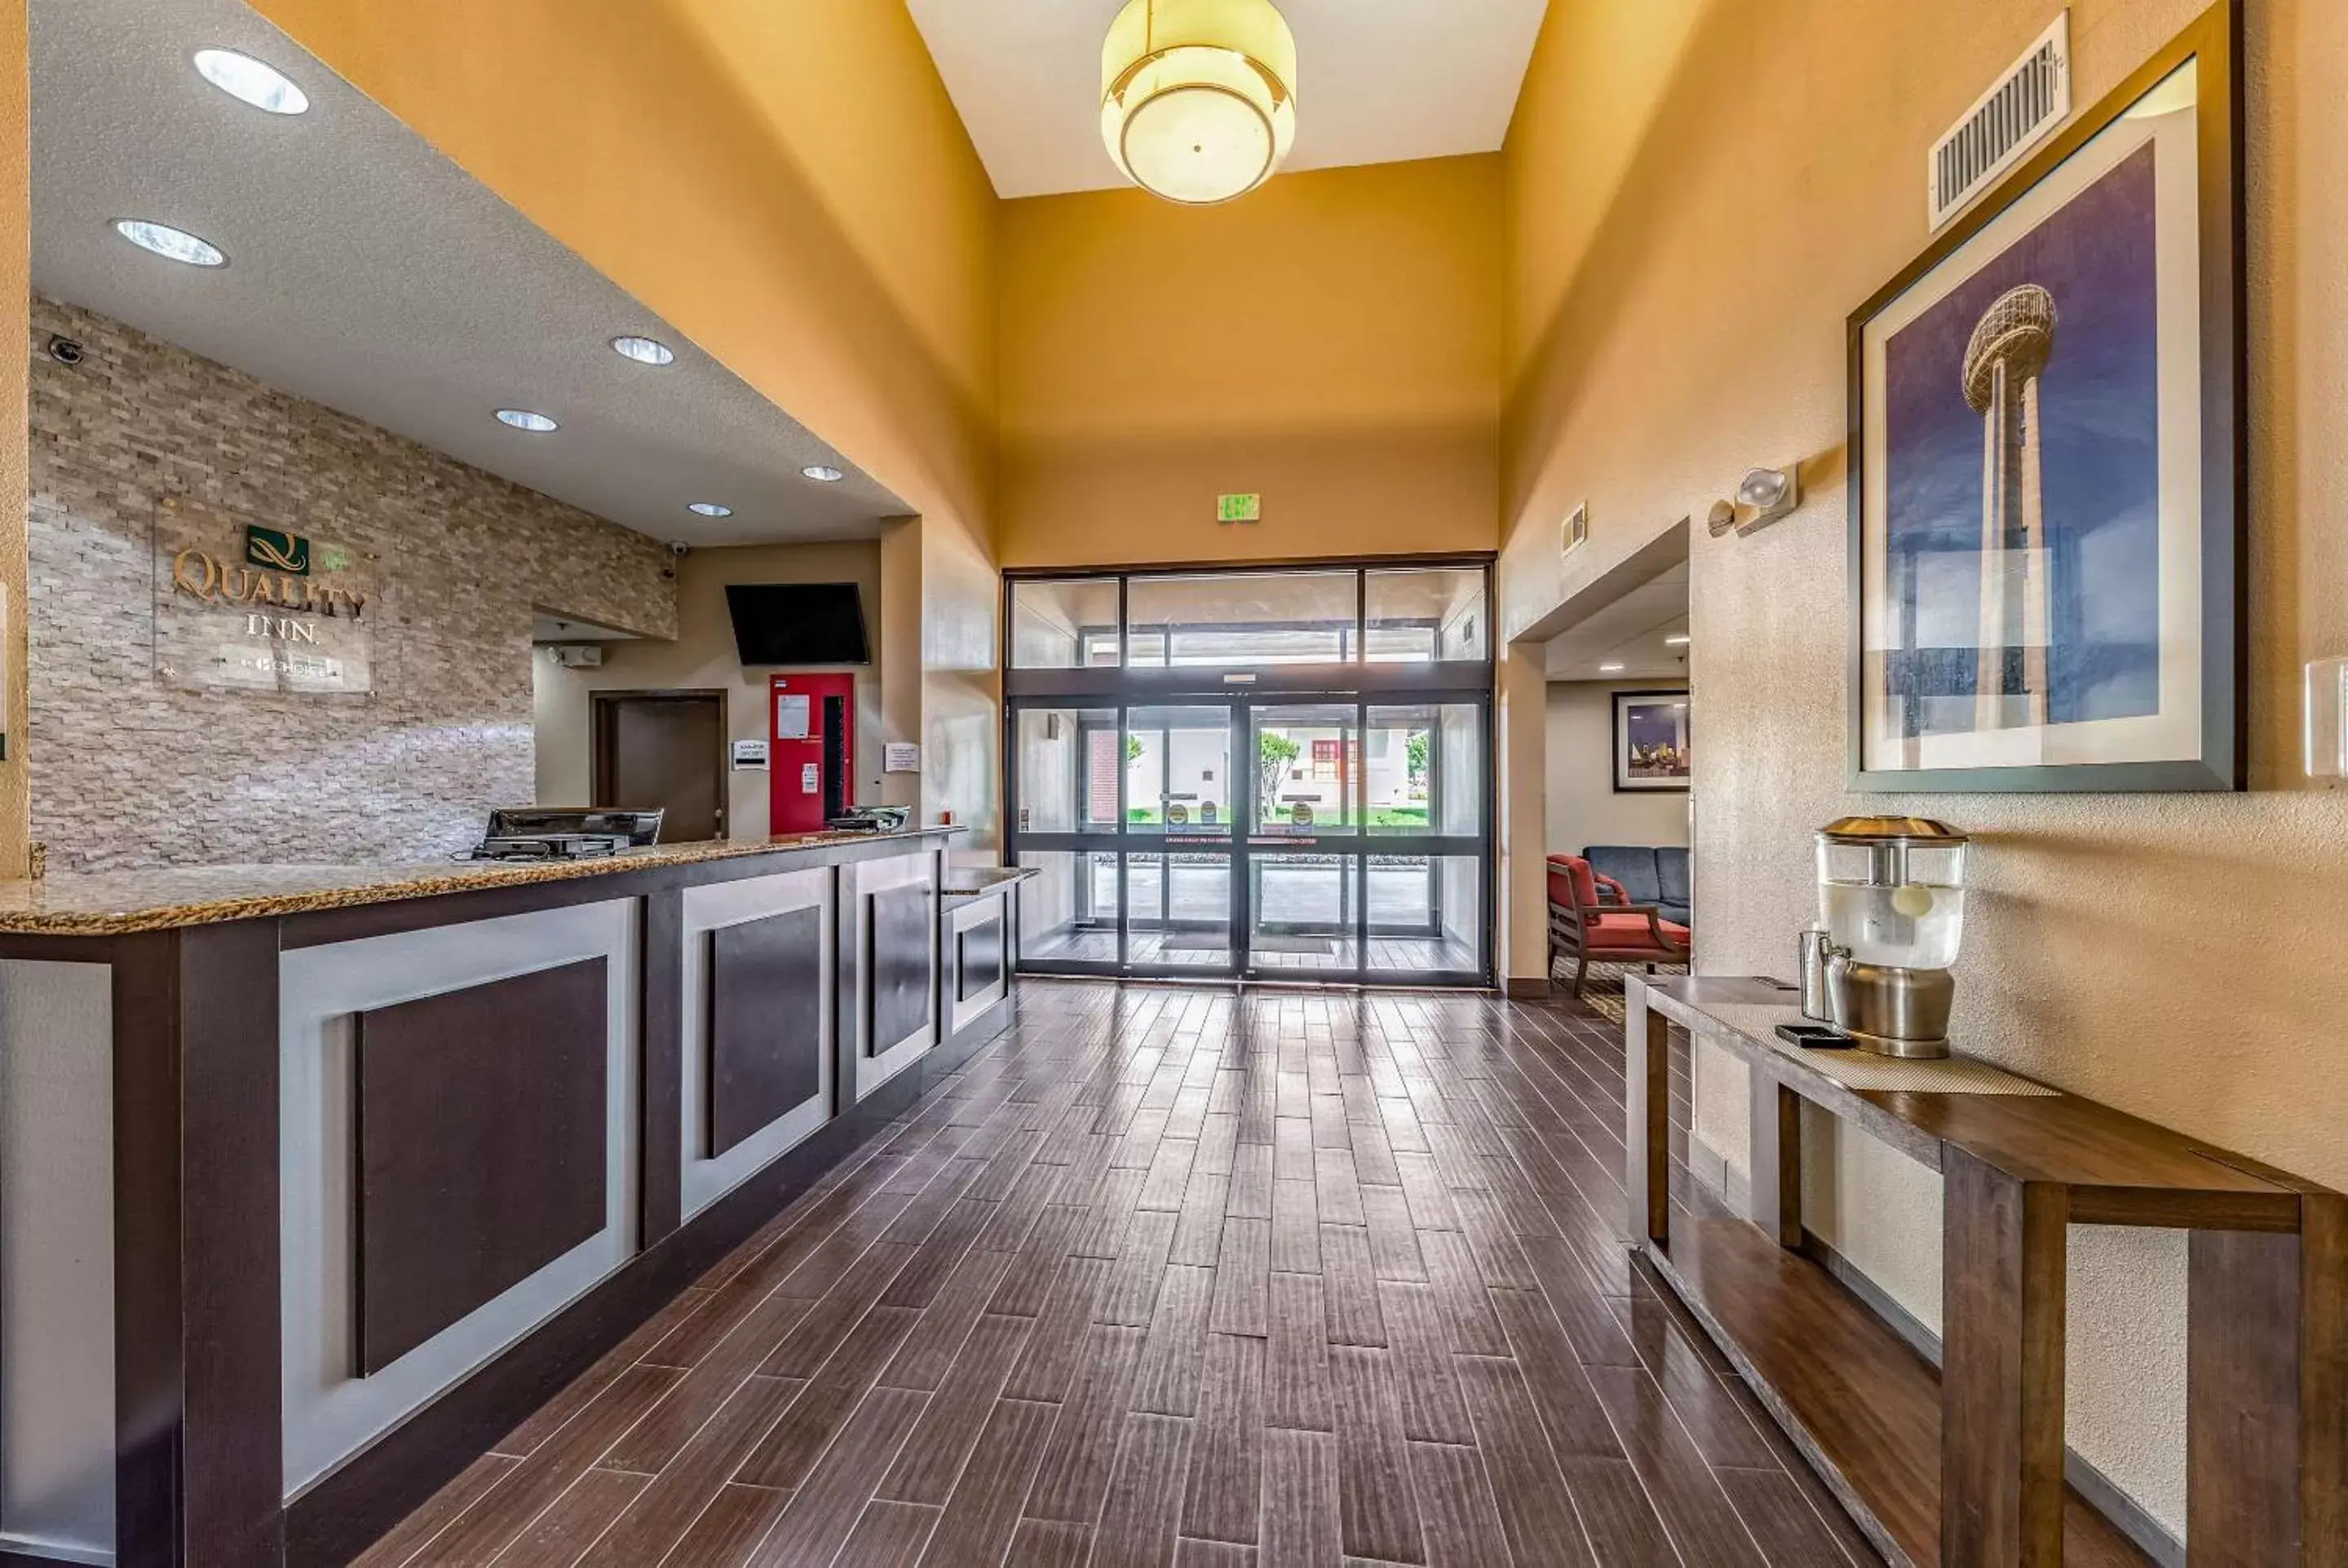 Lobby or reception in Quality Inn West Plano - Dallas